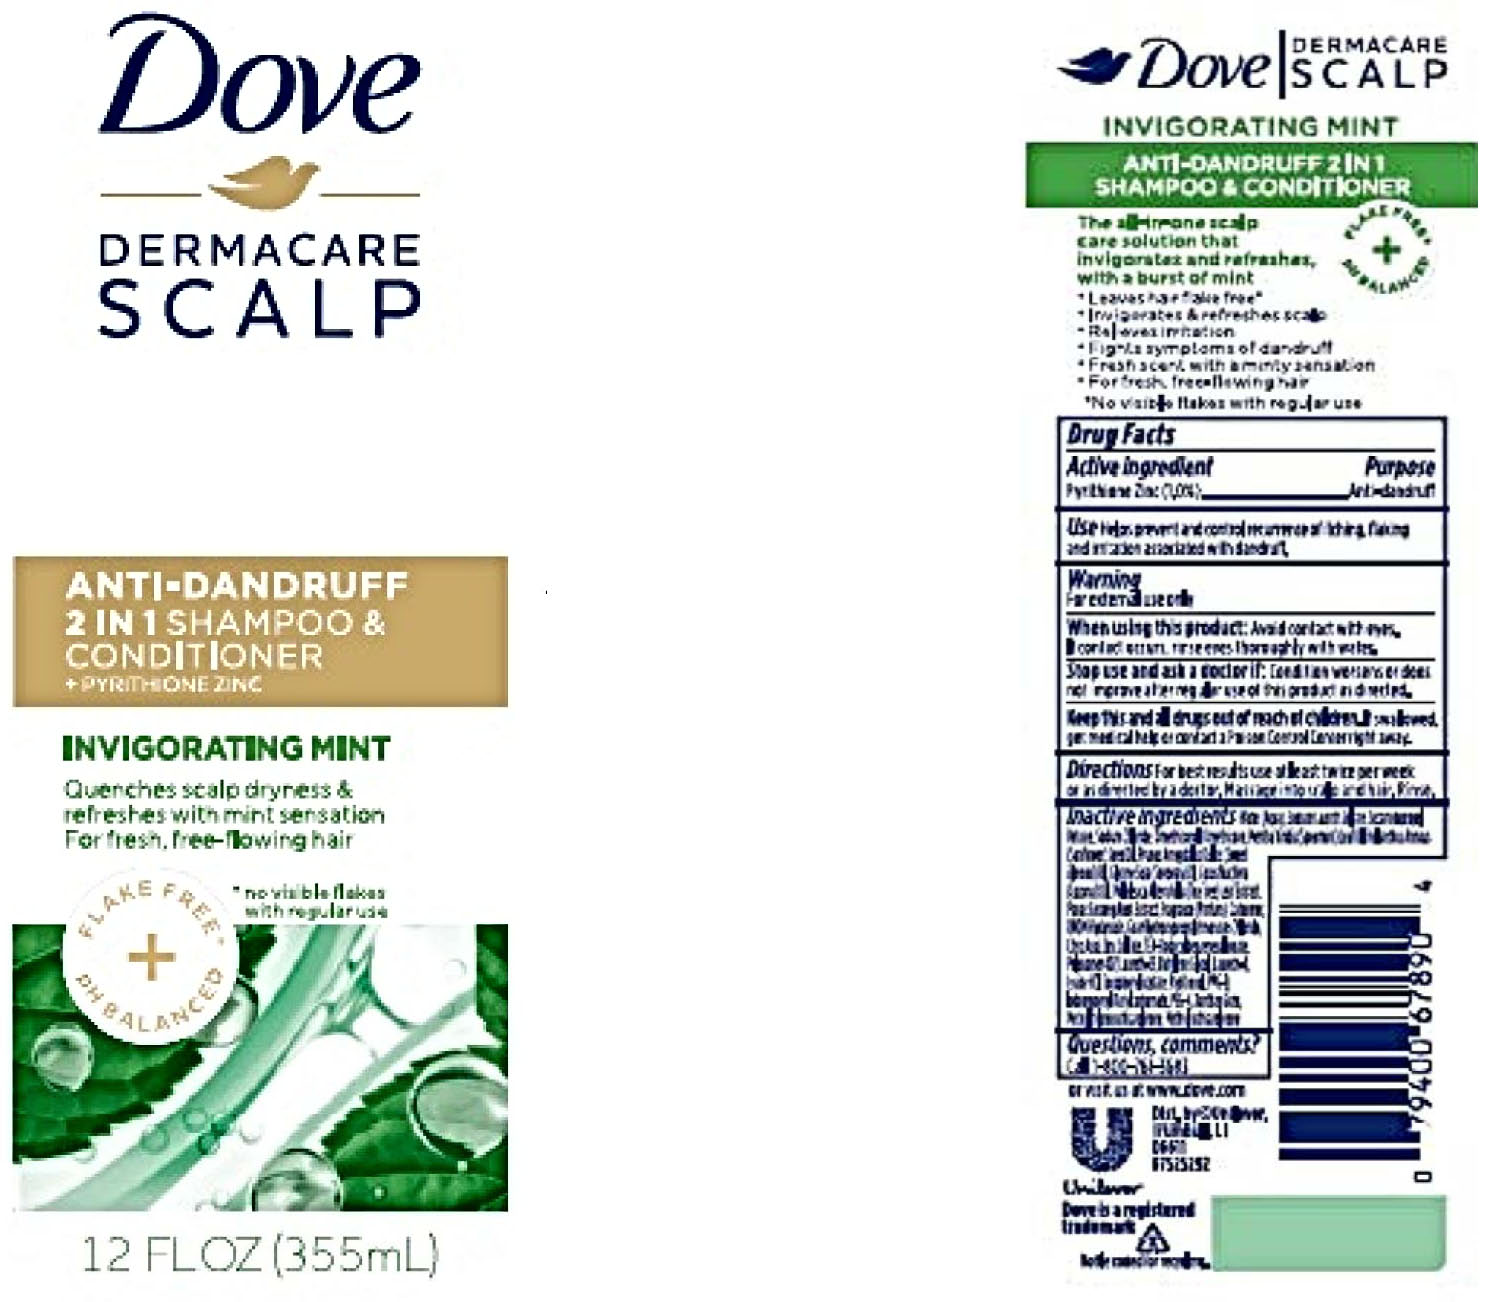 Dove Dermacare 2 In Anti-Dandruff Shampoo & Conditioner